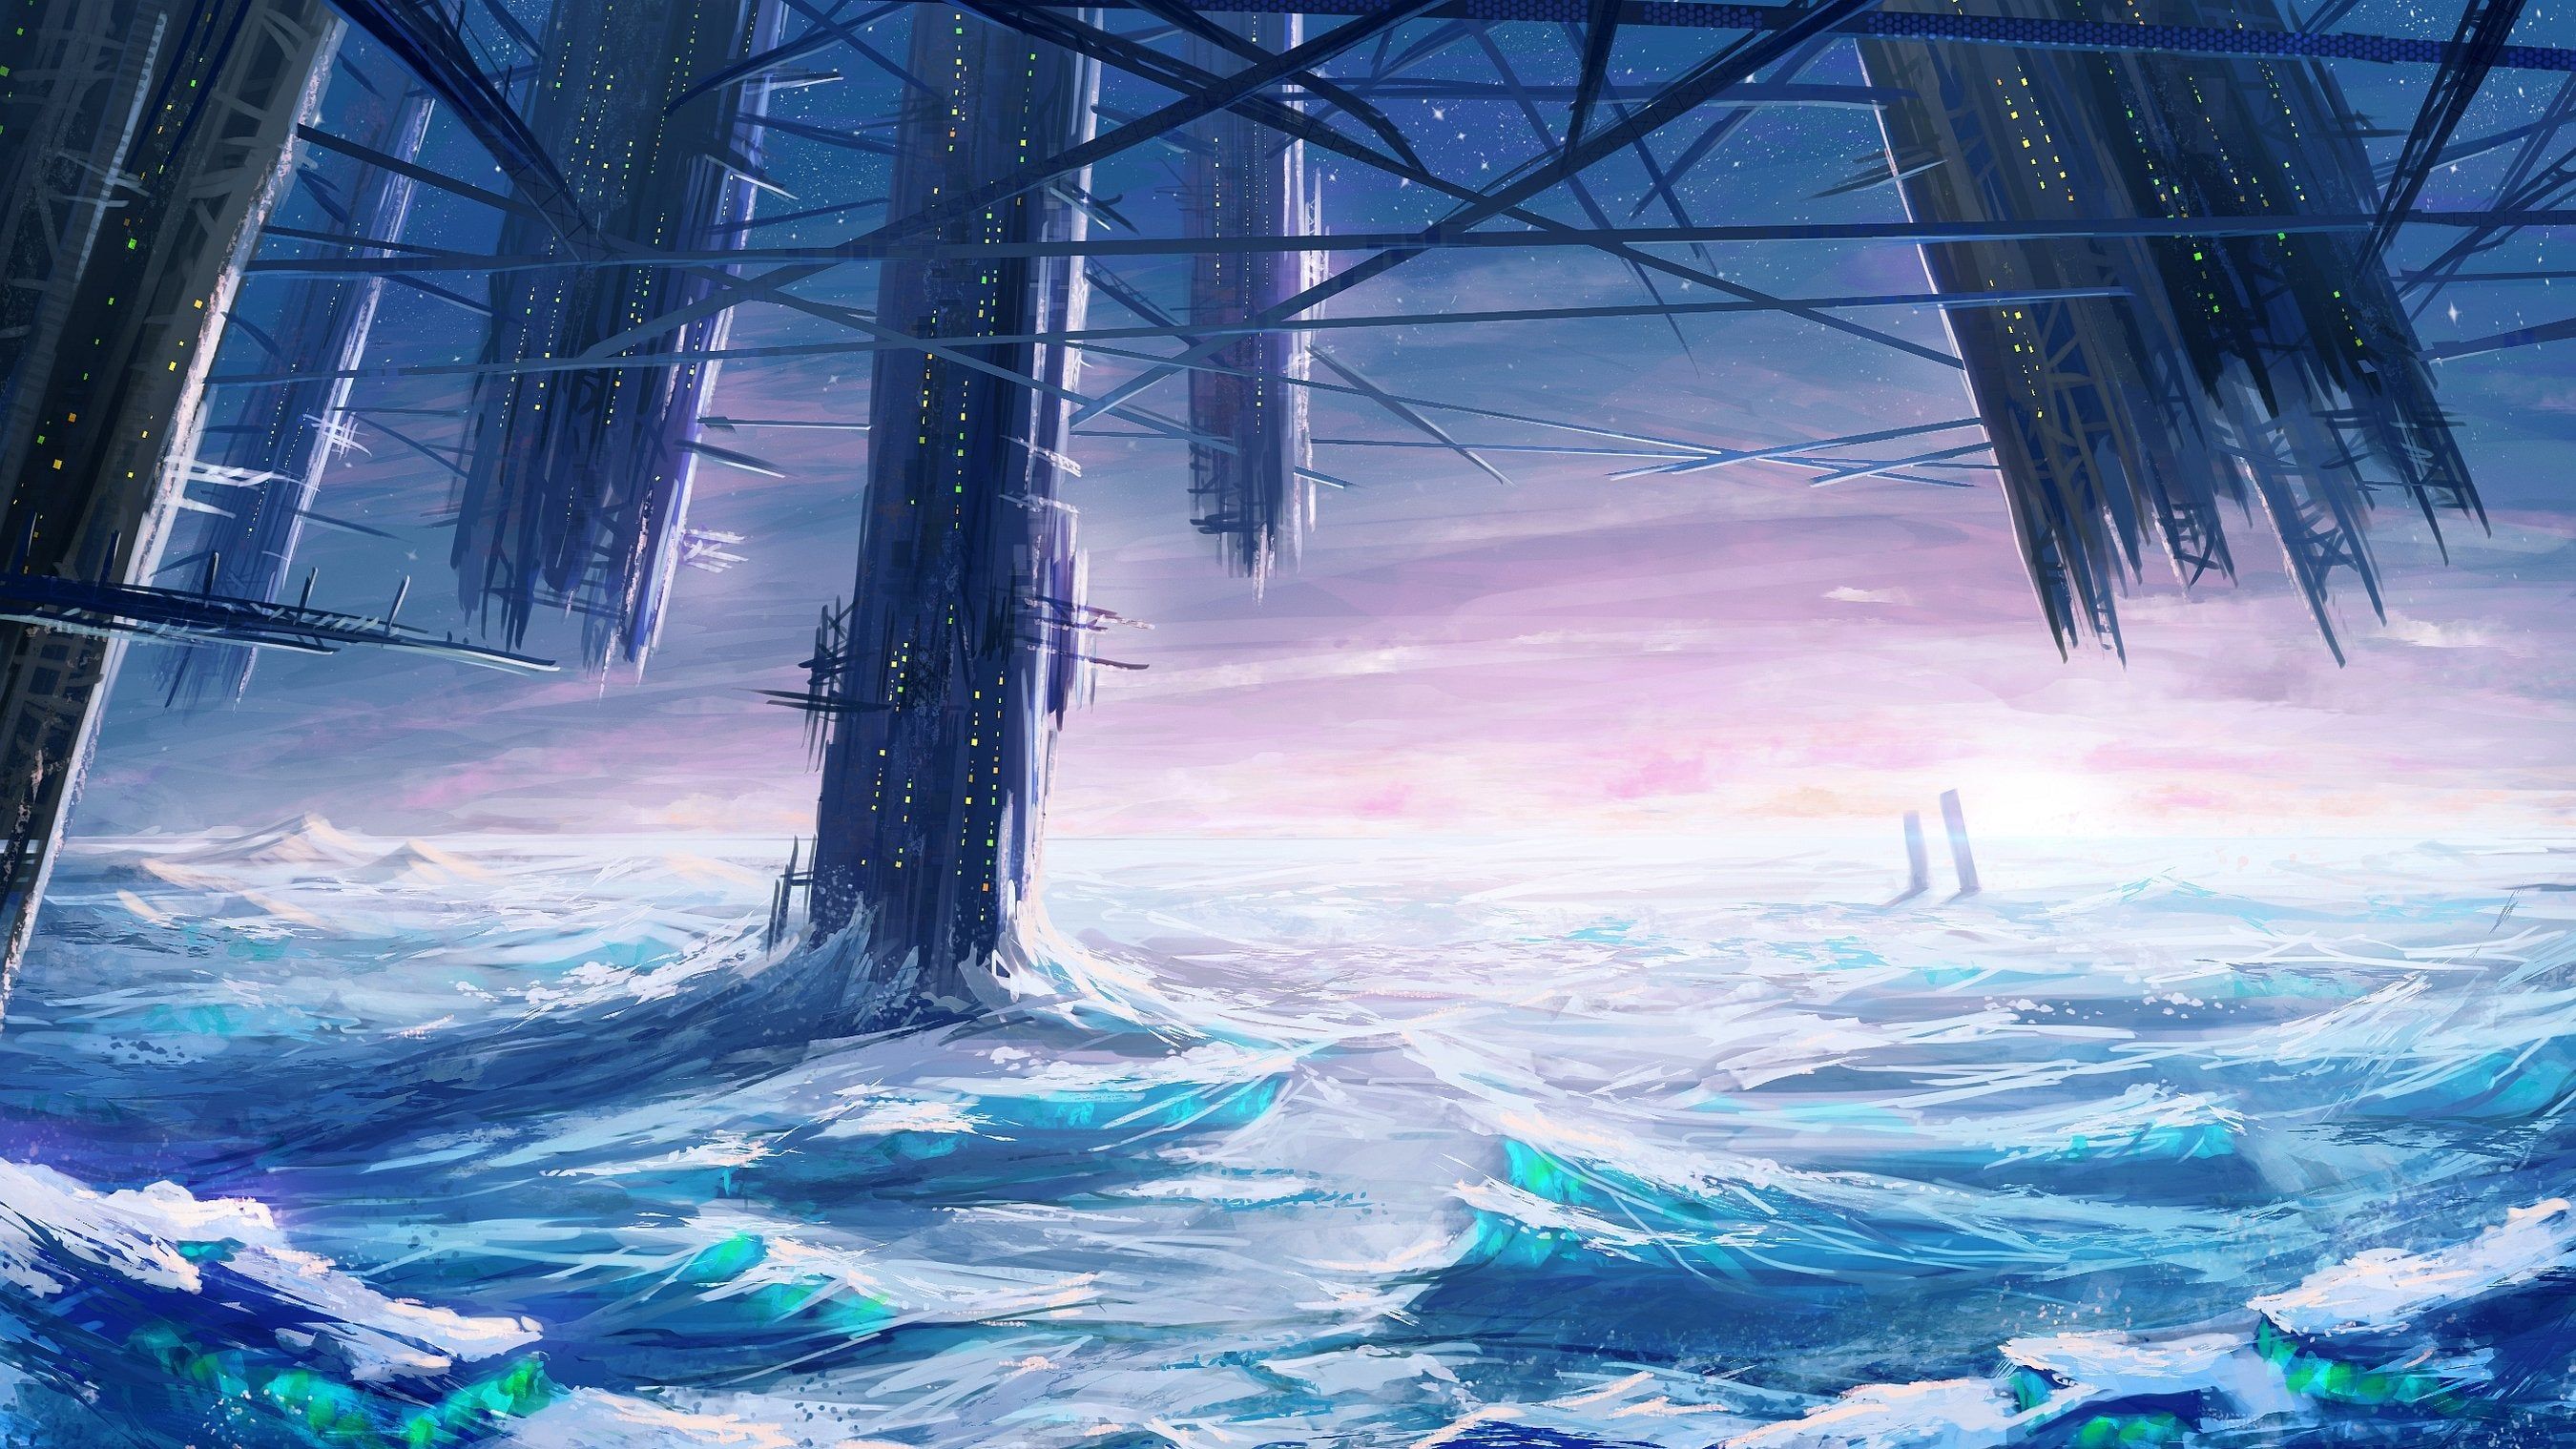 Ice Castle Sci Fi Landscape [2700 X 1519]